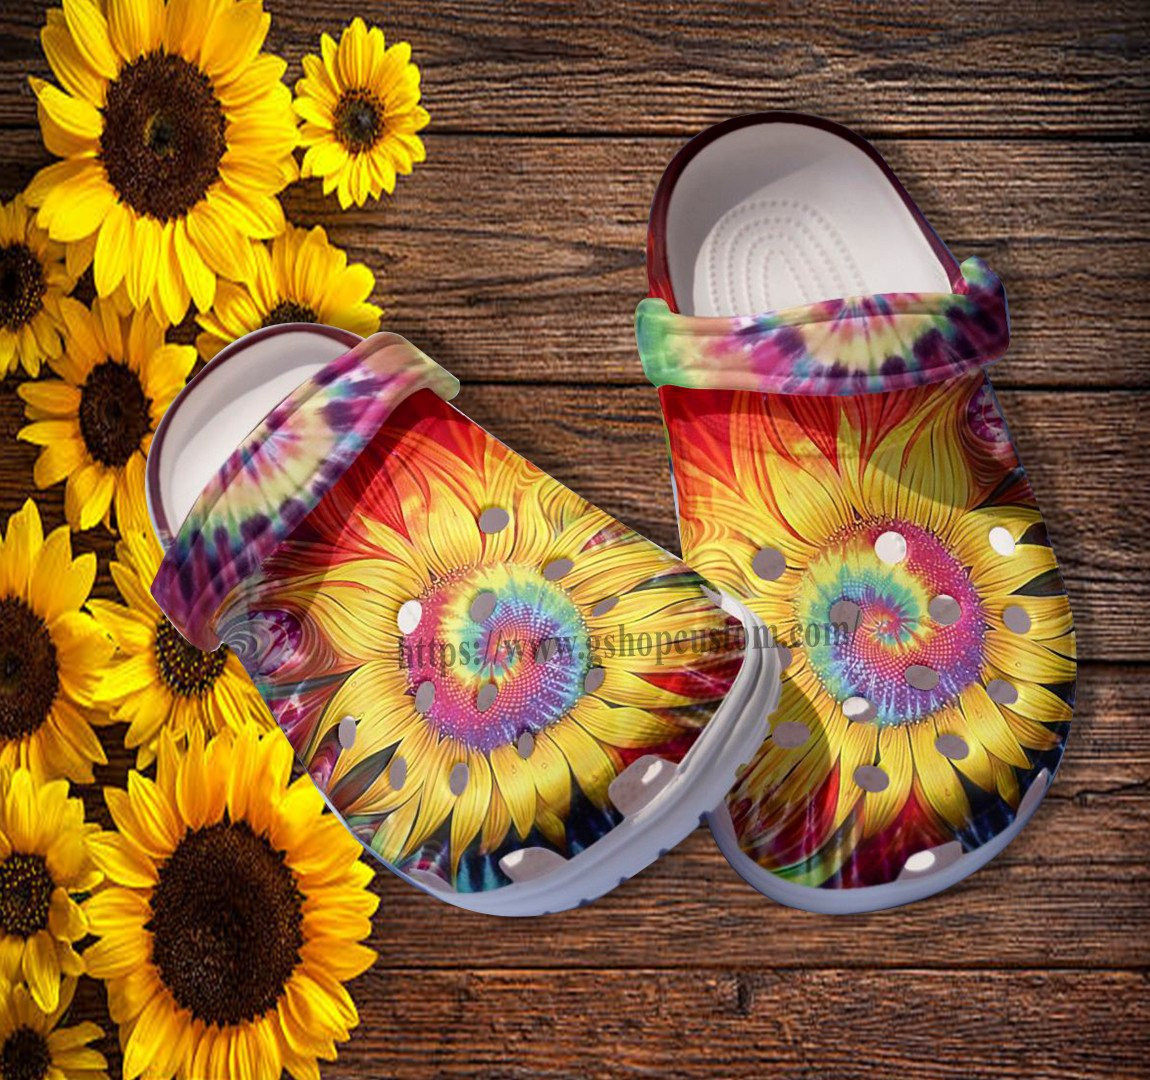 Sunflower Trippy Hippie Croc Shoes Gift Niece- Sunflower Rainbow Peace Hippie Shoes Croc Clogs For Daughter